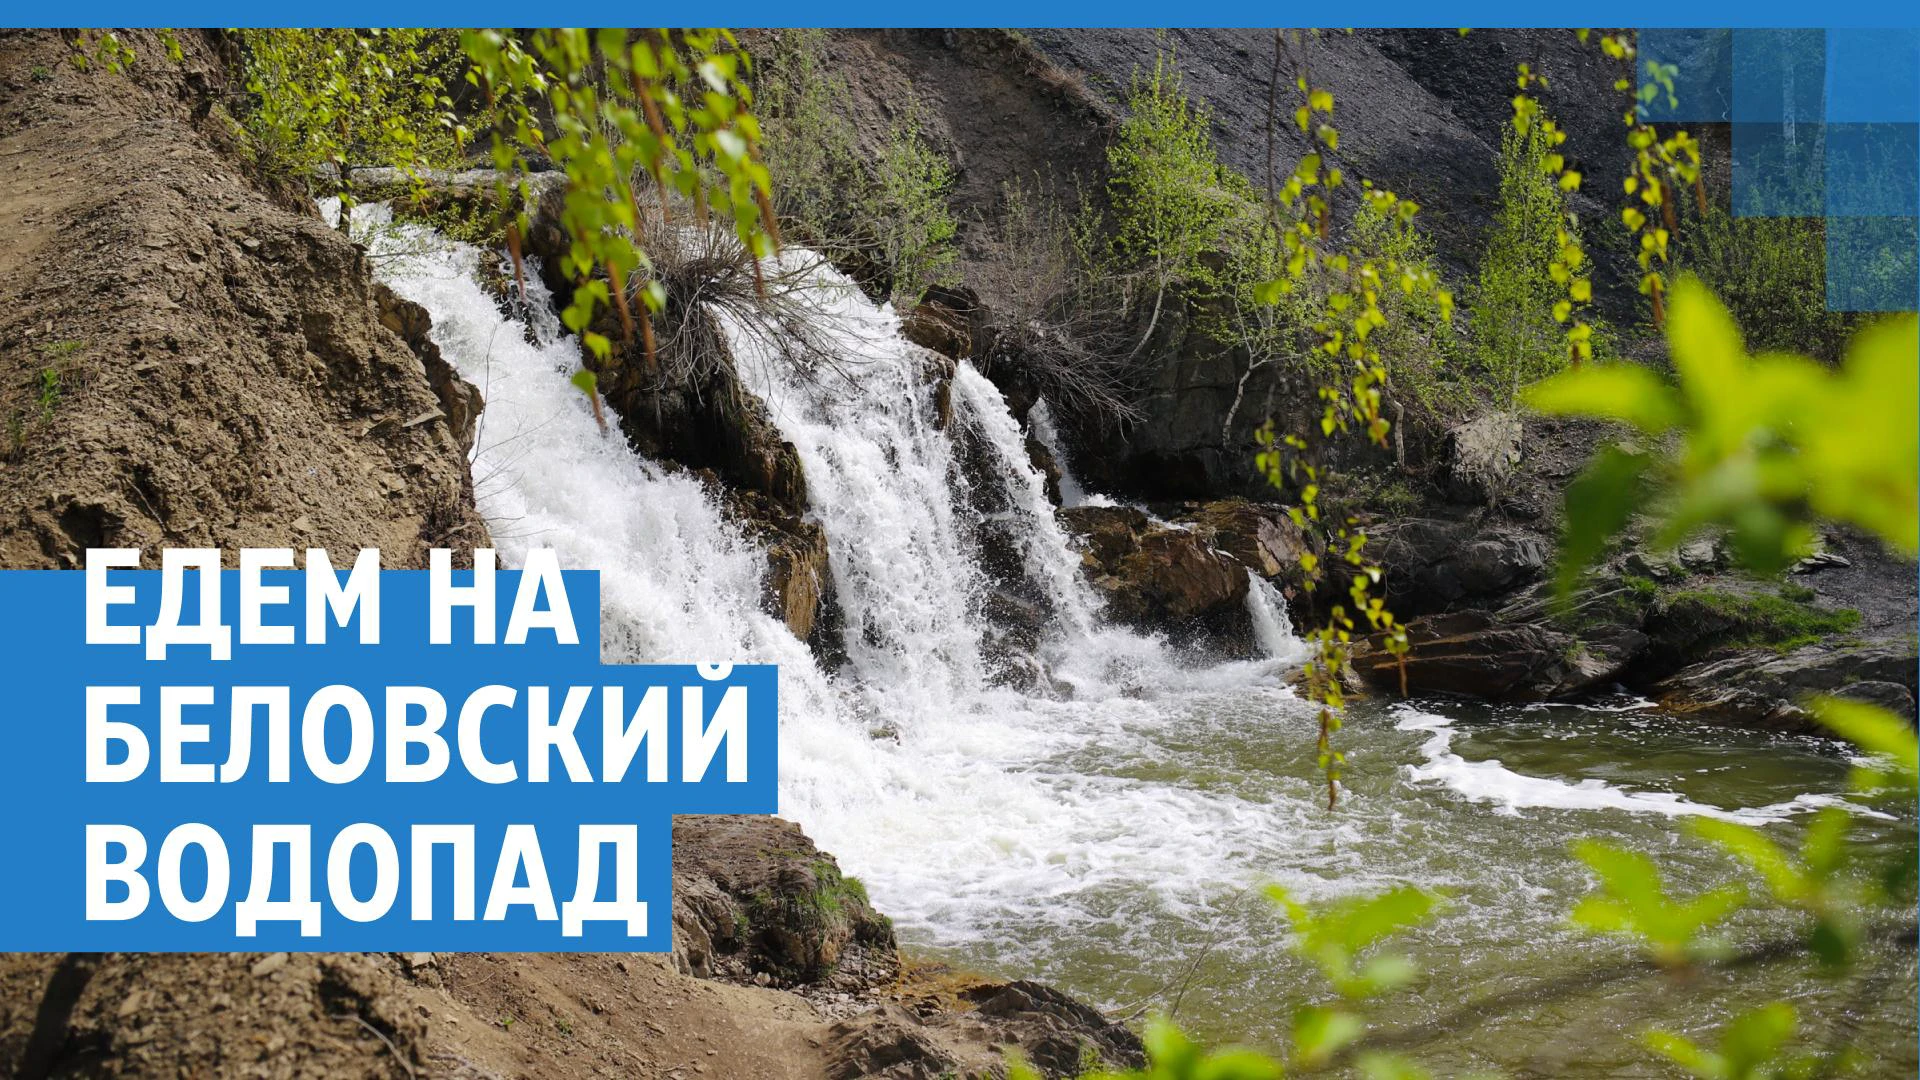 Как проехать к водопаду в Белово, где находится Беловский водопад, маршрут  - 26 мая 2023 - НГС.ру